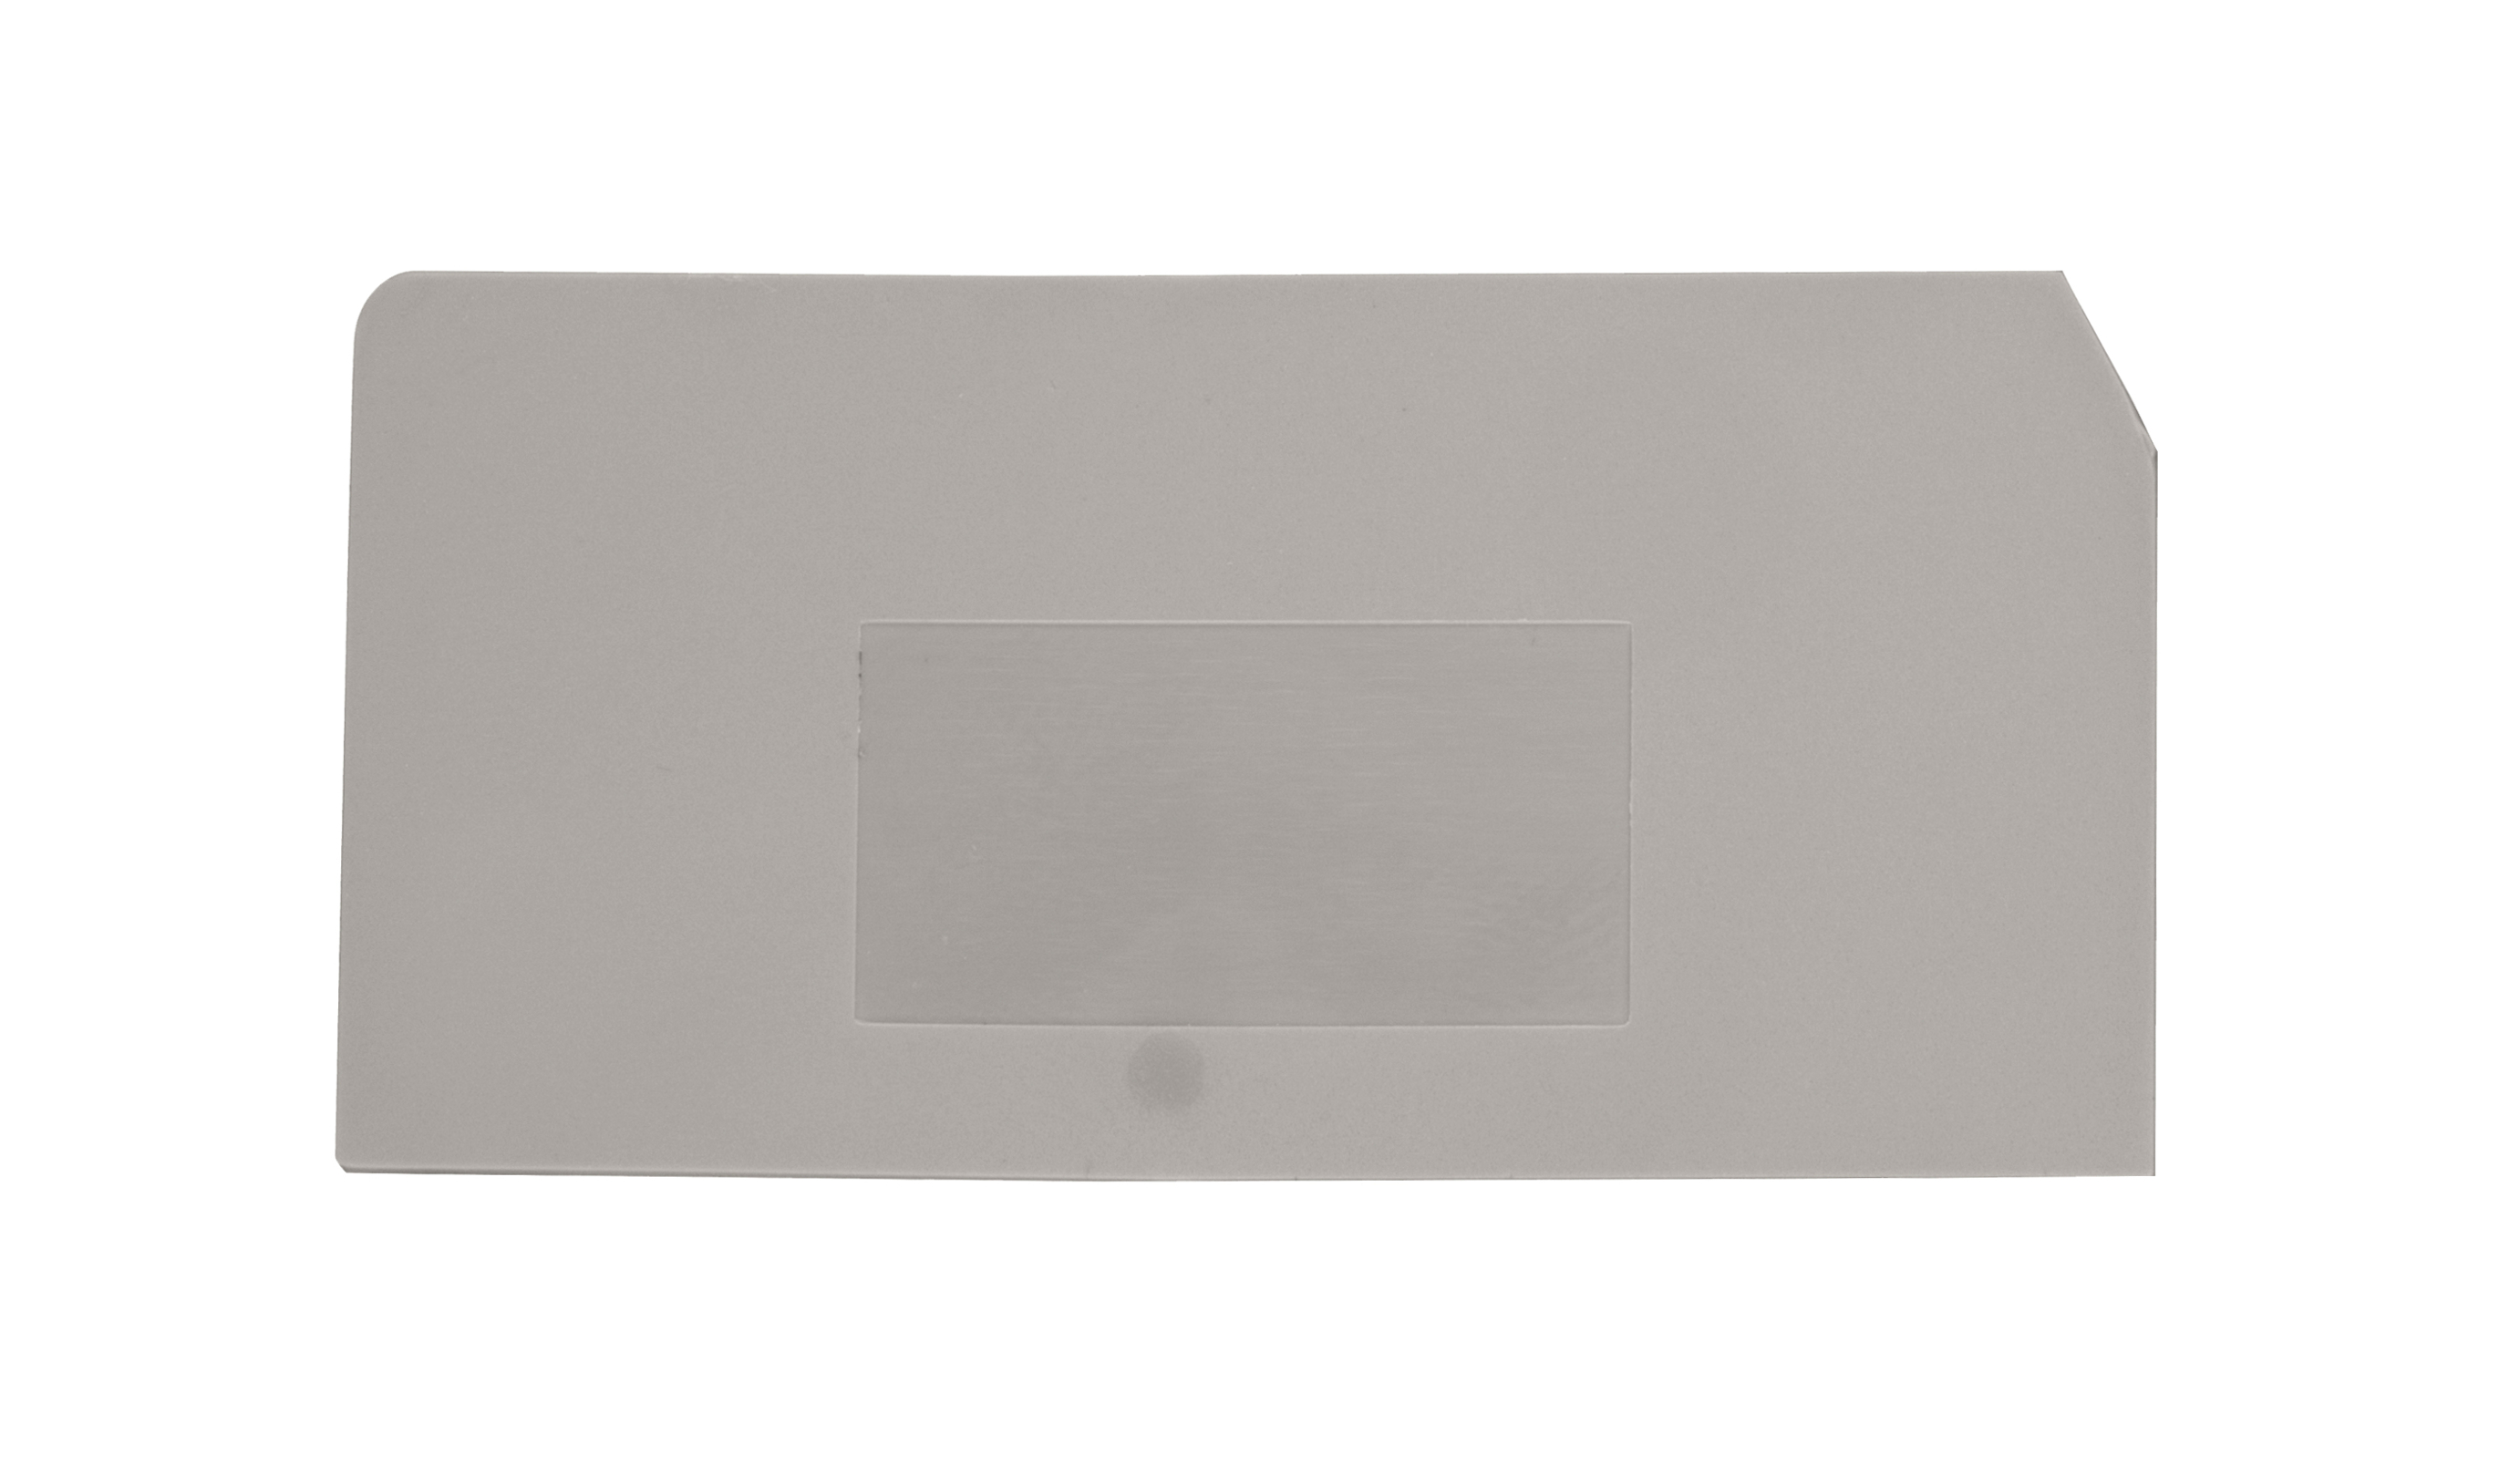 Foto: Endplatte für Sicherungsklemme ASK 2 S grau (c) Schrack